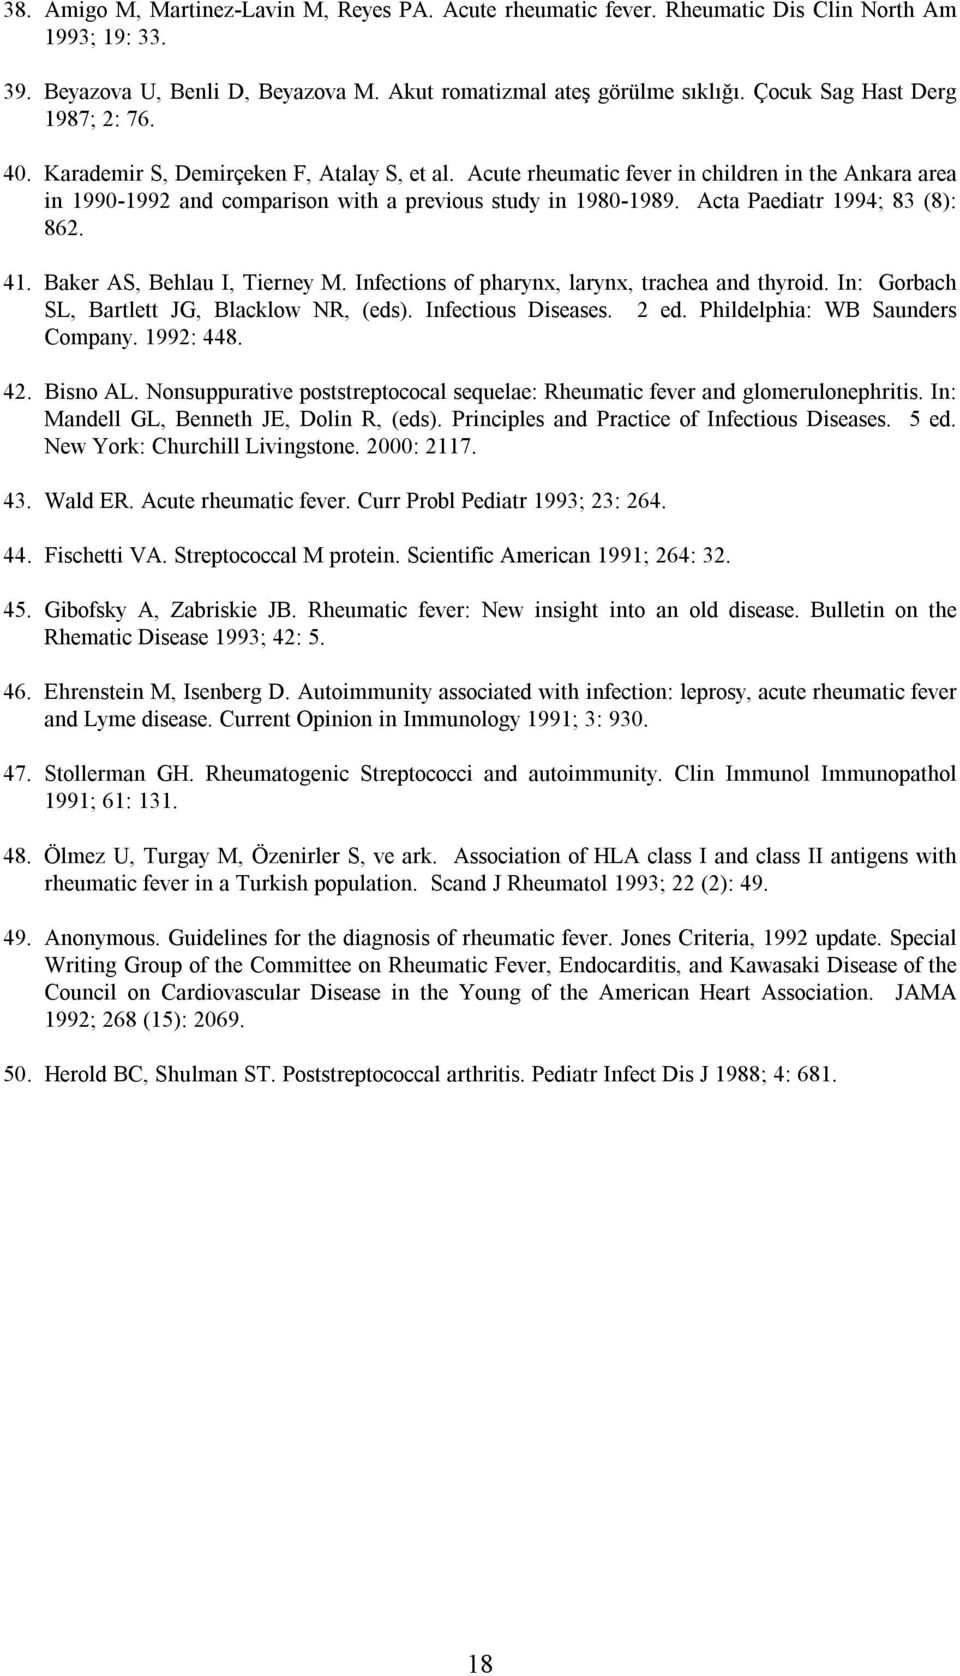 Acta Paediatr 1994; 83 (8): 862. 41. Baker AS, Behlau I, Tierney M. Infections of pharynx, larynx, trachea and thyroid. In: Gorbach SL, Bartlett JG, Blacklow NR, (eds). Infectious Diseases. 2 ed.